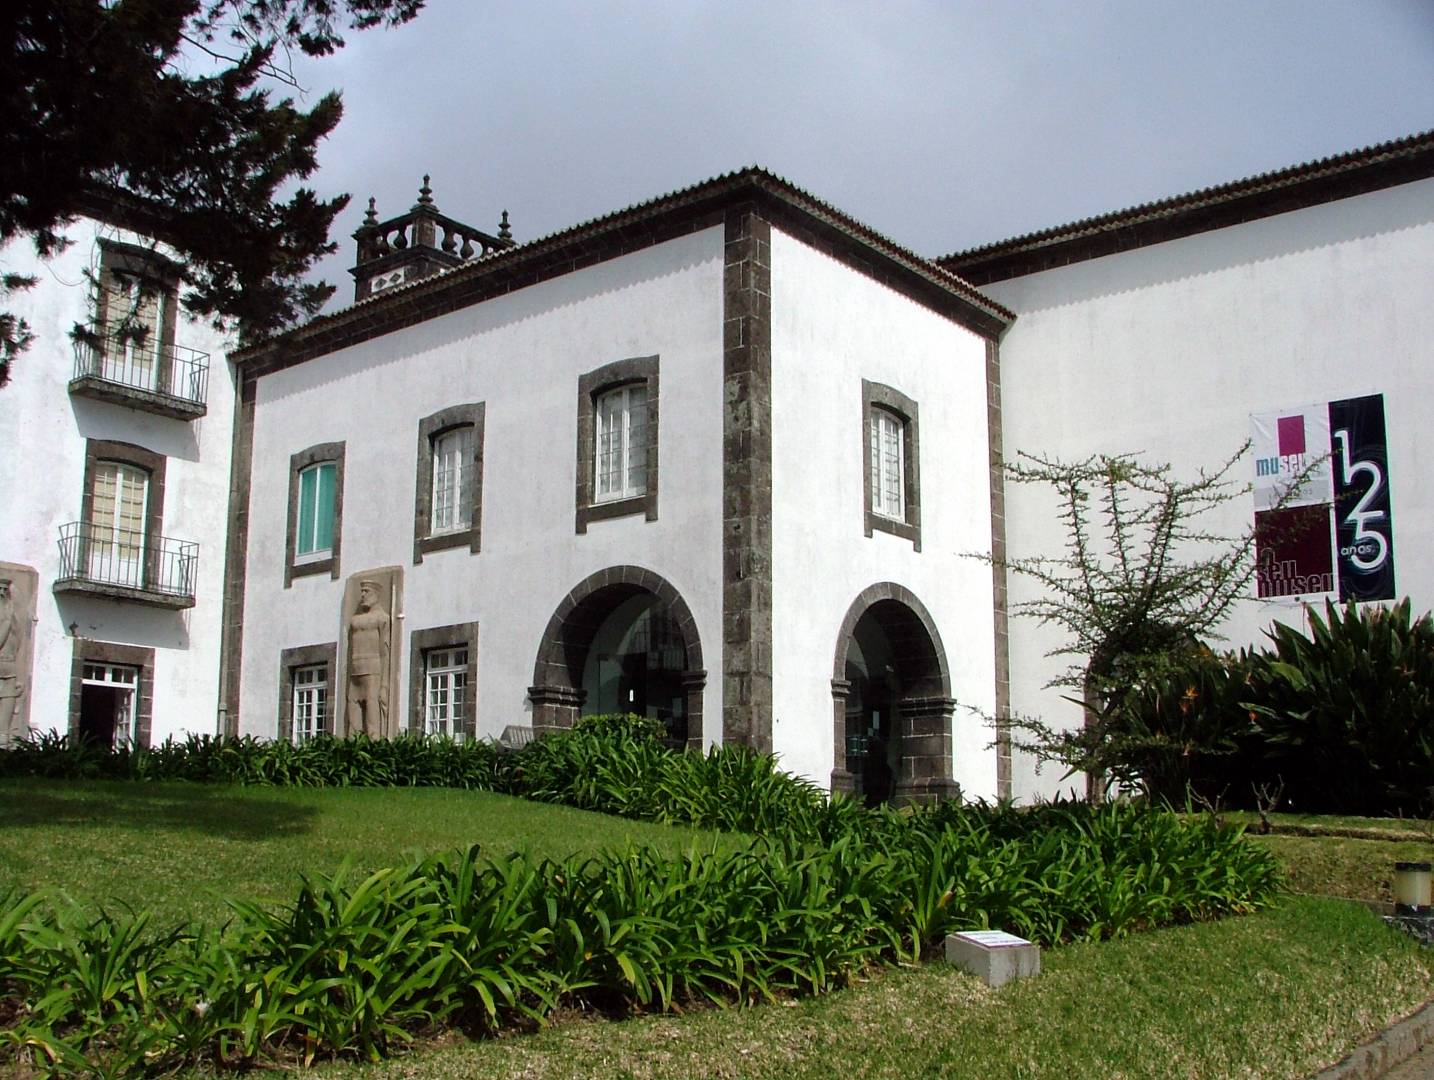 Museu Carlos Machado